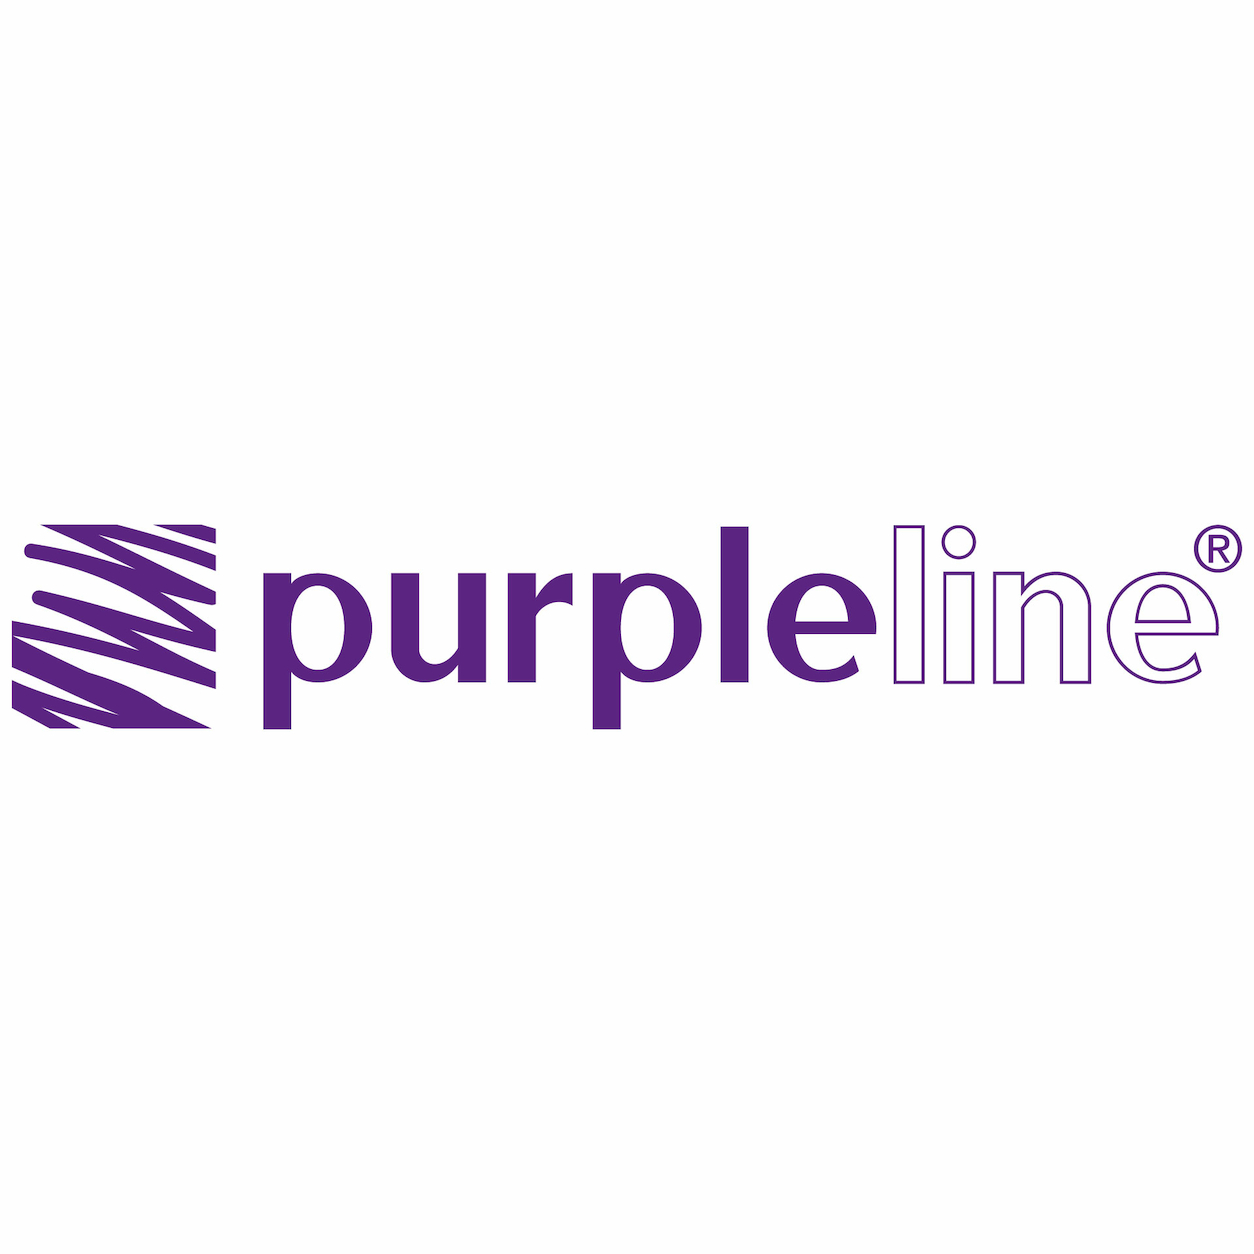 Purpleline logo